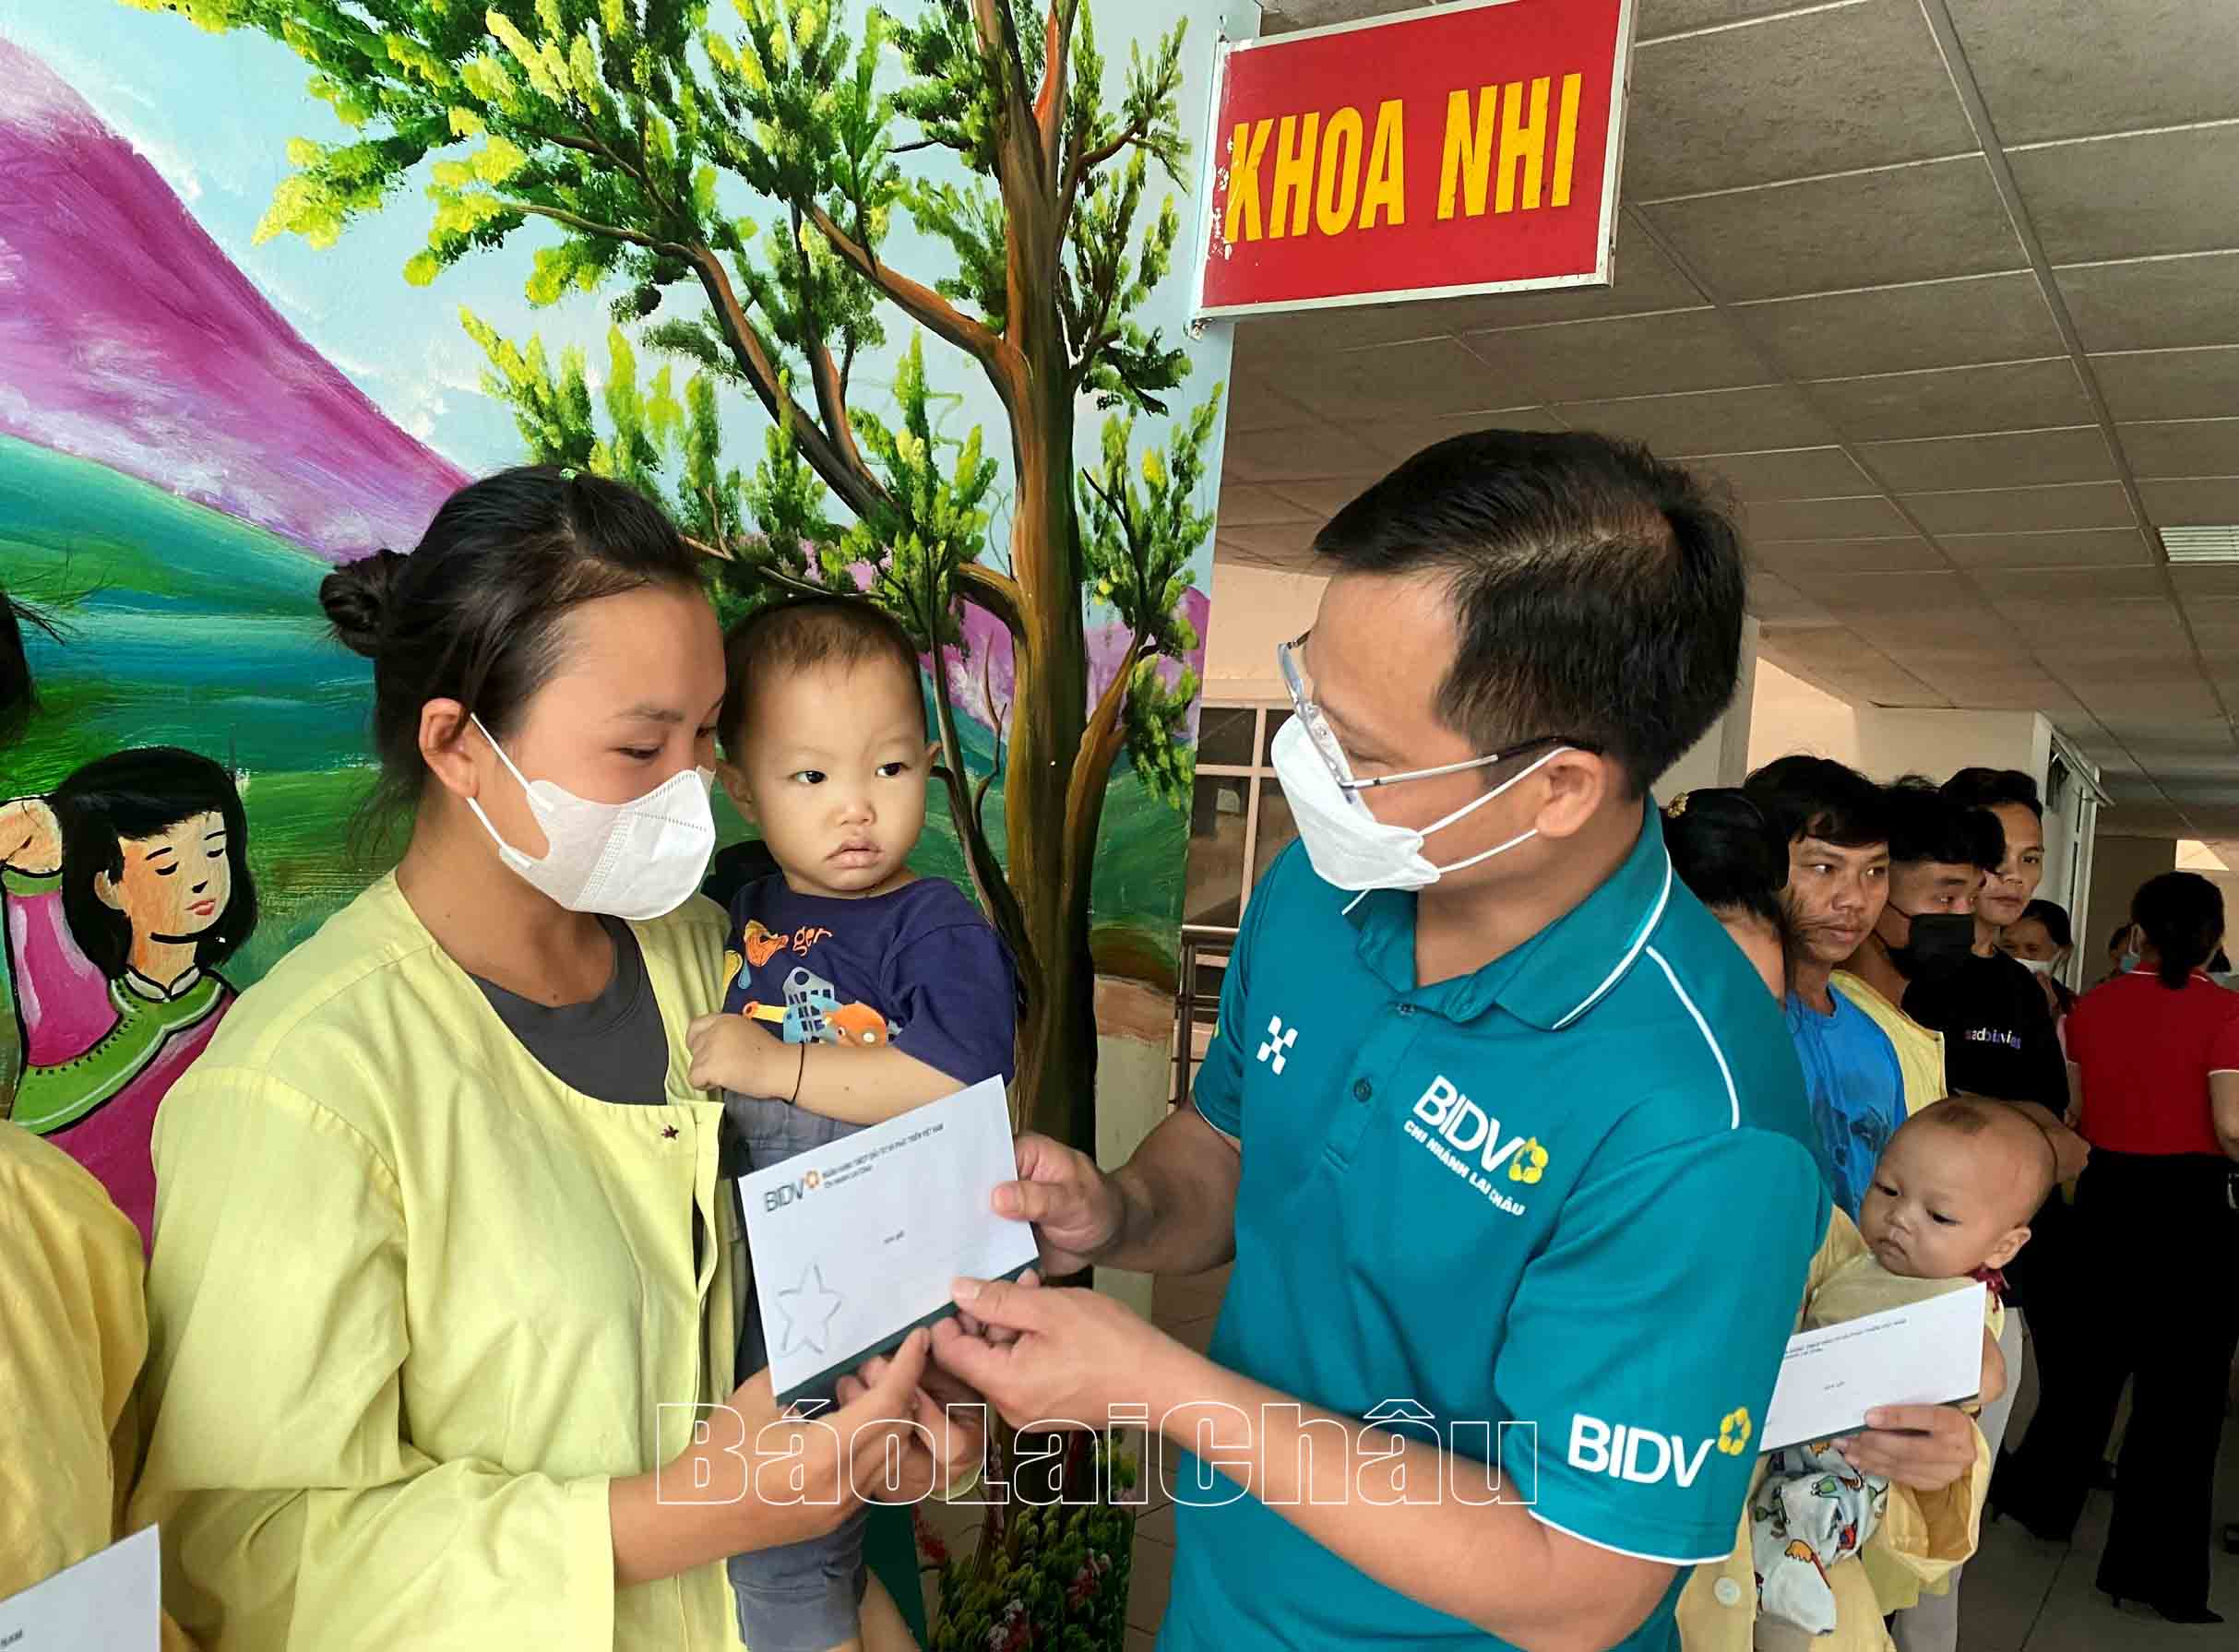 Les dirigeants de BIDV Lai Chau offrent des cadeaux aux enfants en situation difficile traités à l'hôpital général provincial.